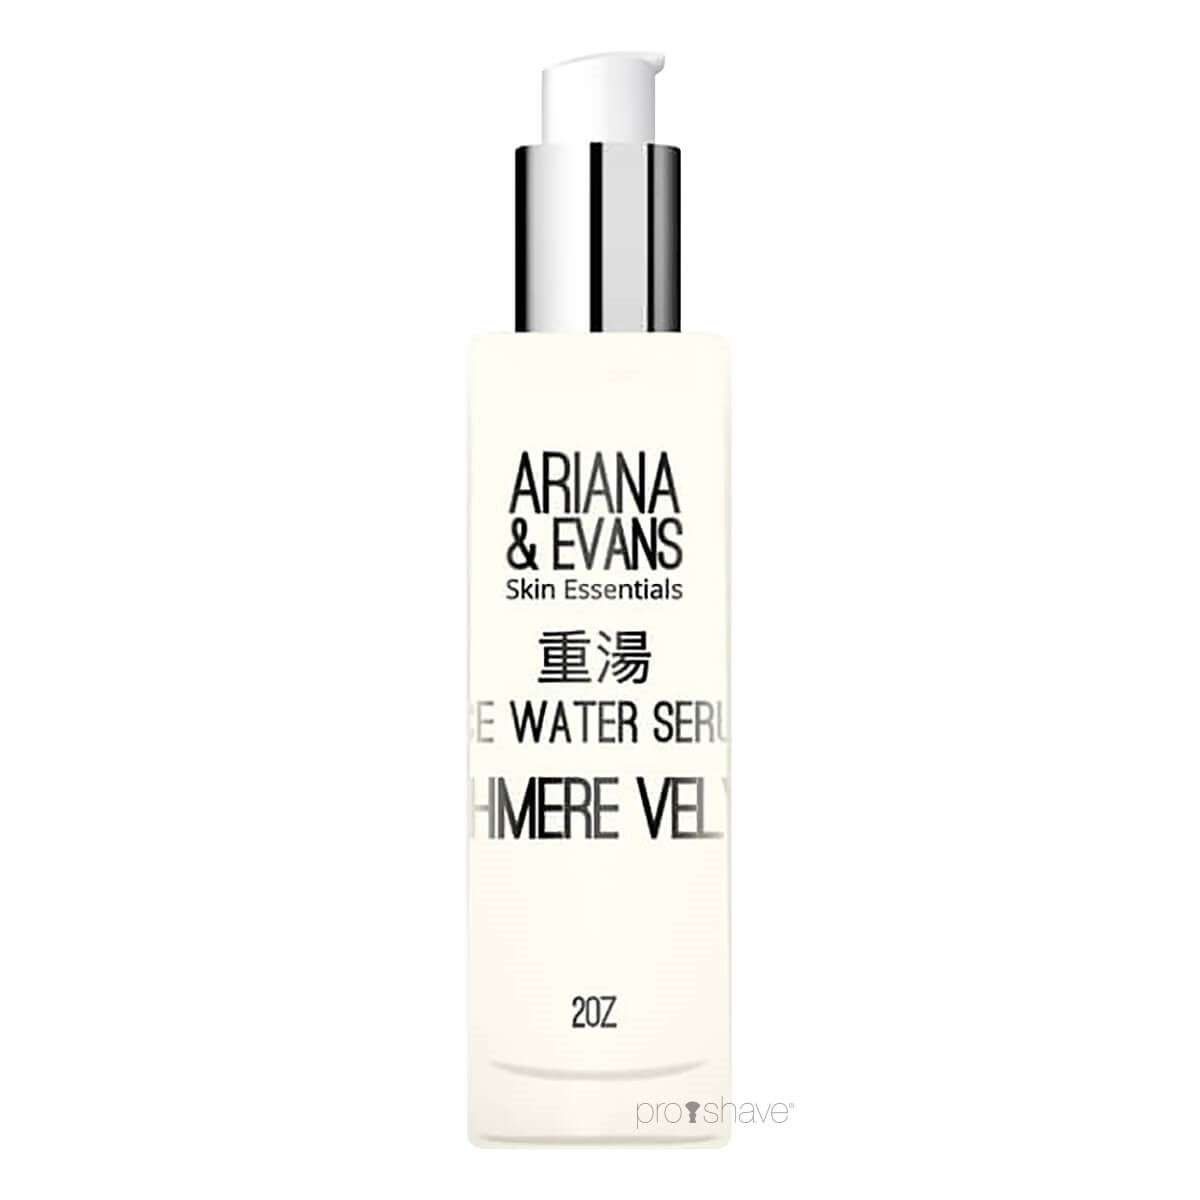 #2 - Ariana & Evans Rice Water Serum, Cashmere Velvet, 59 ml.